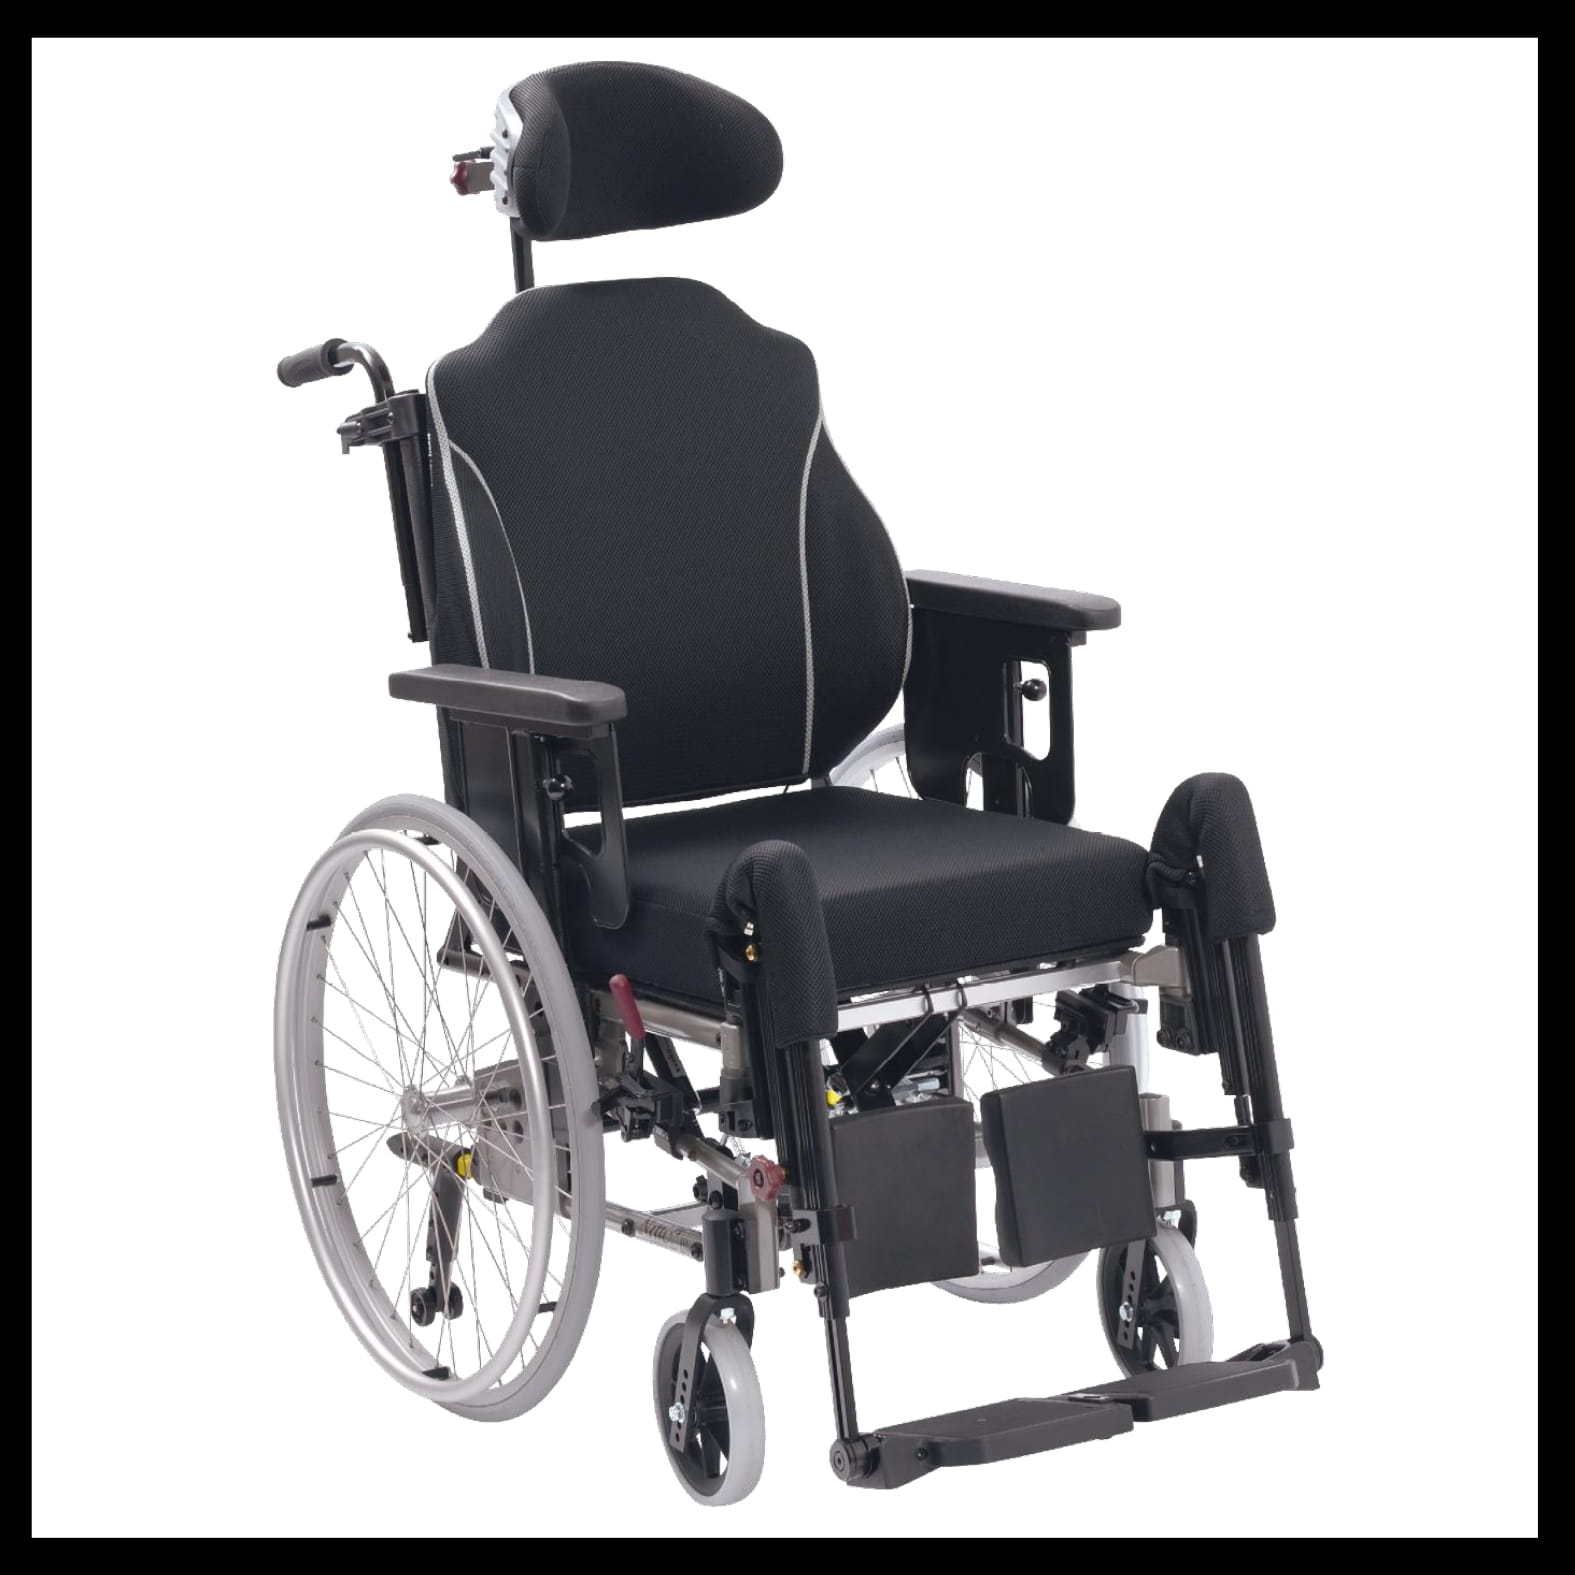 Appui-tête multiposition - Accessoire fauteuil roulant